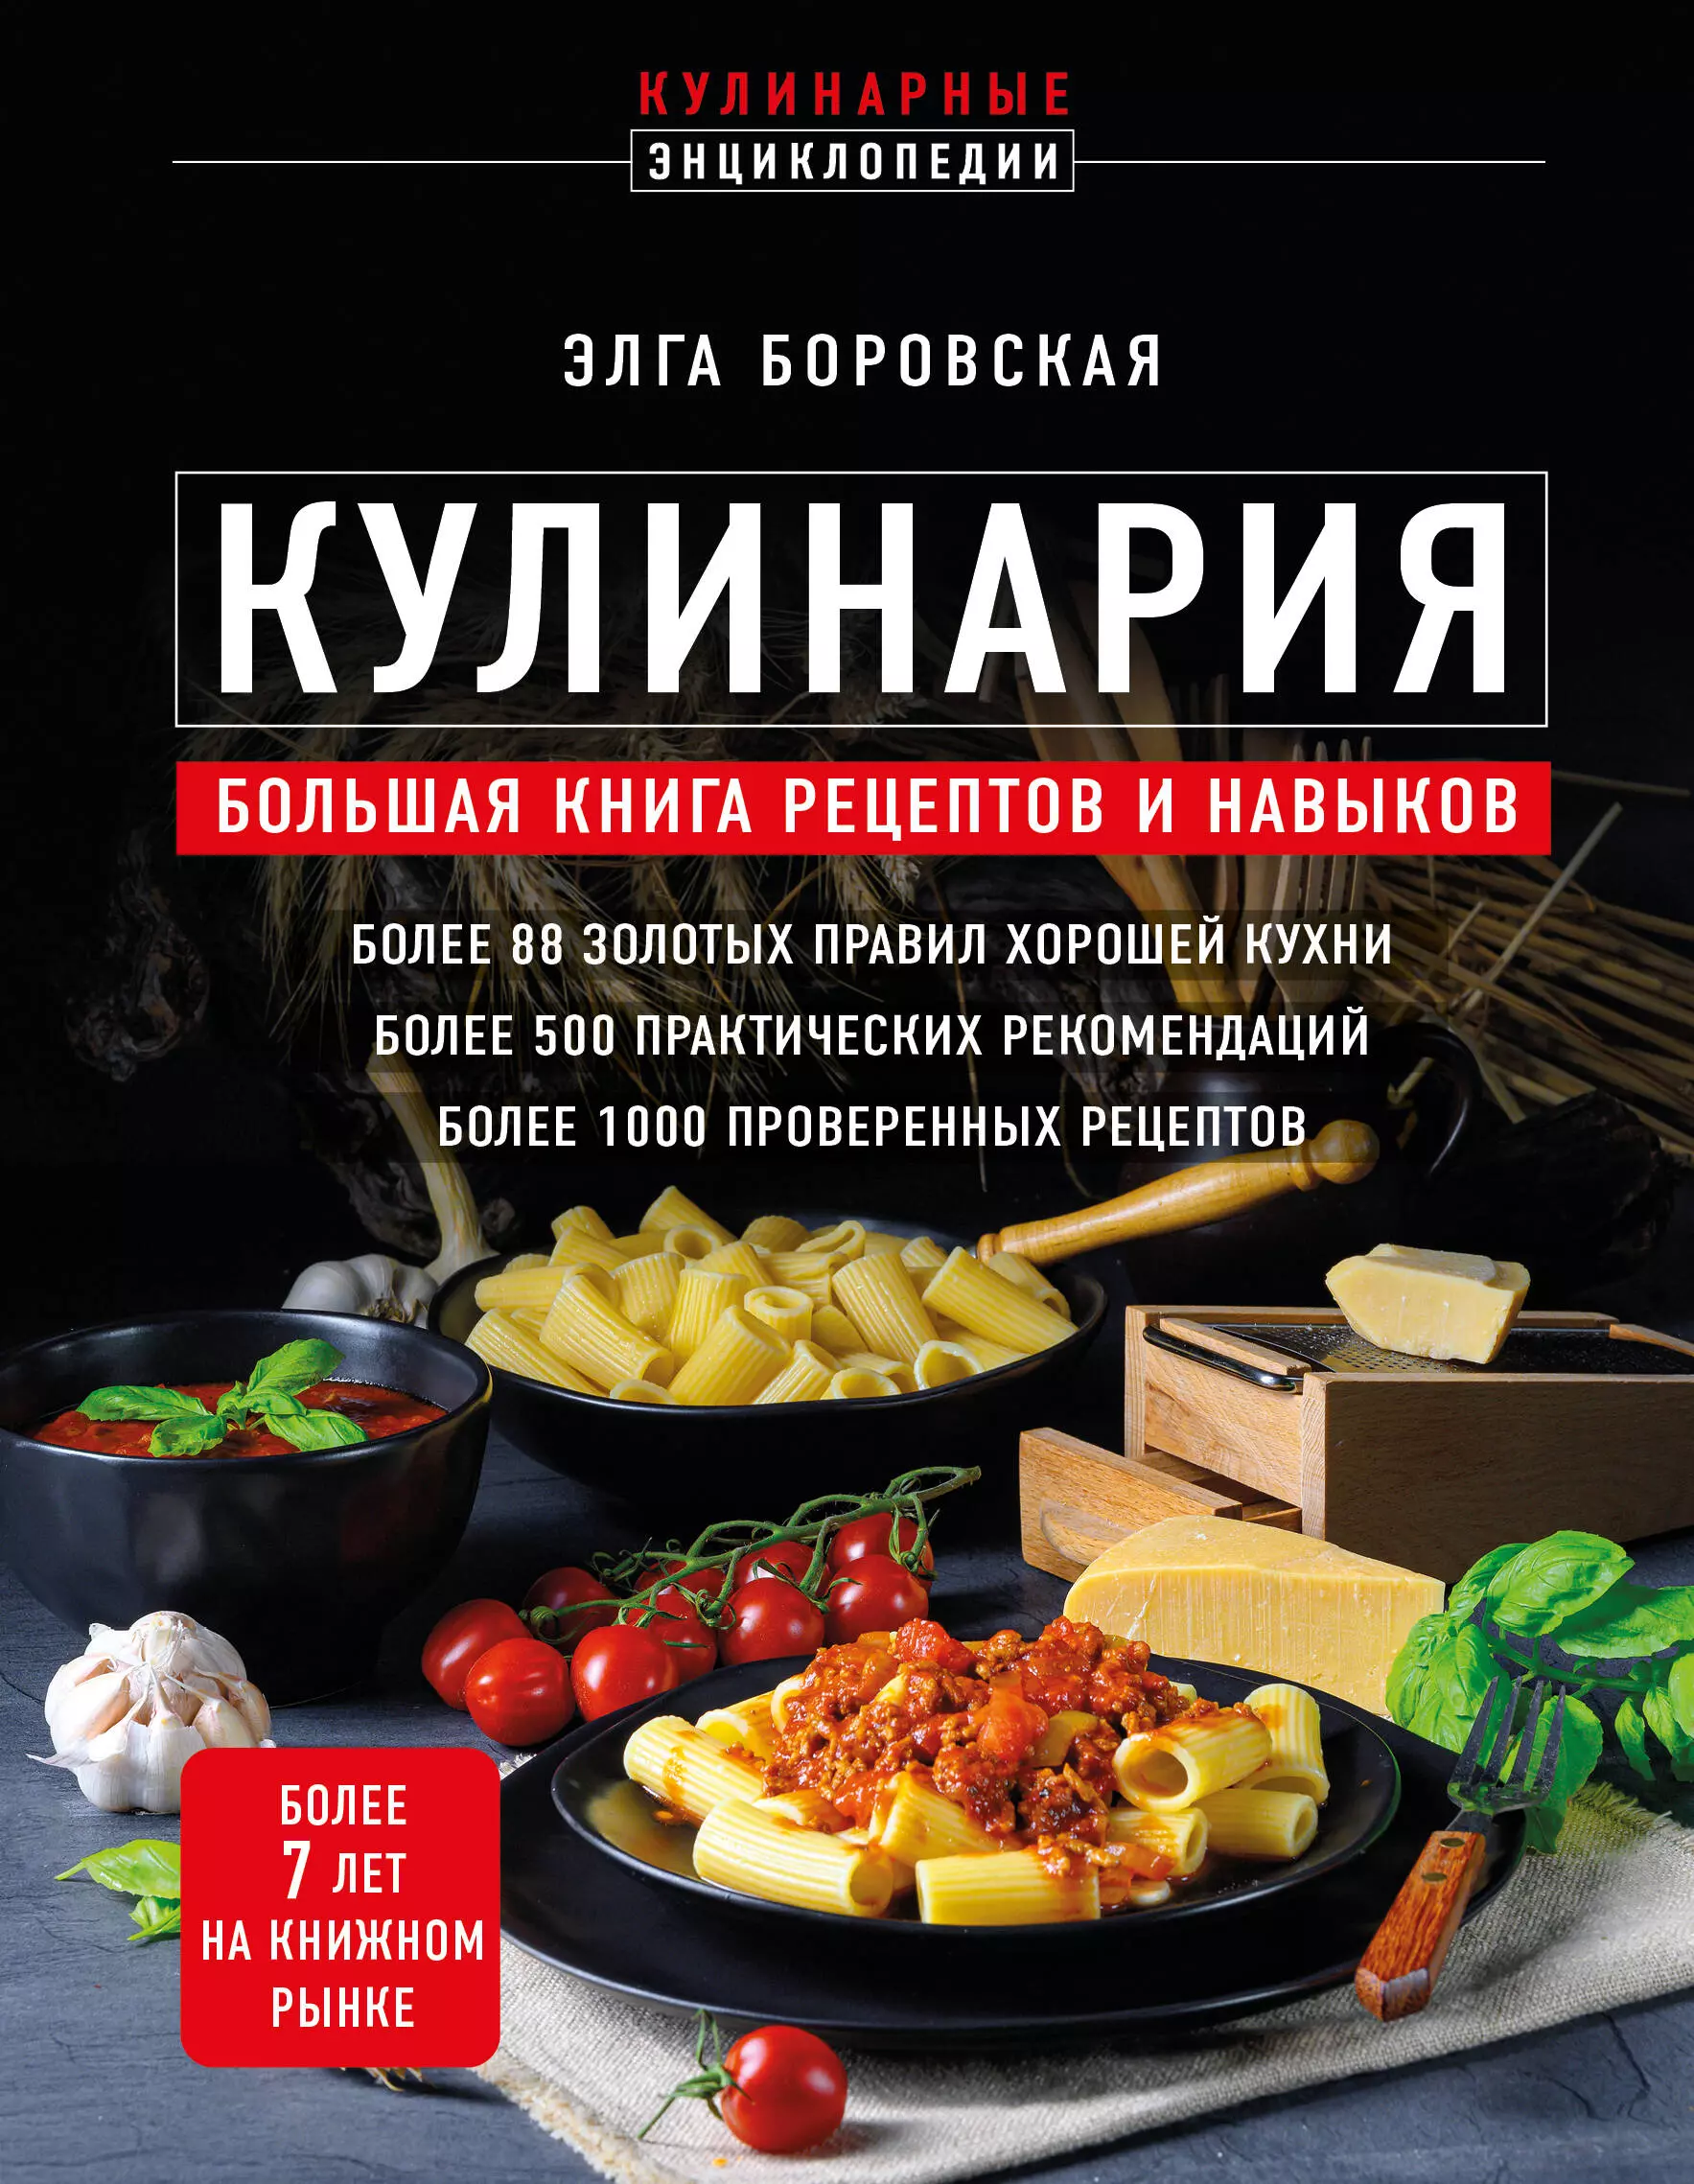 Кулинария: большая книга рецептов и навыков боровска элга кулинария большая книга рецептов и навыков